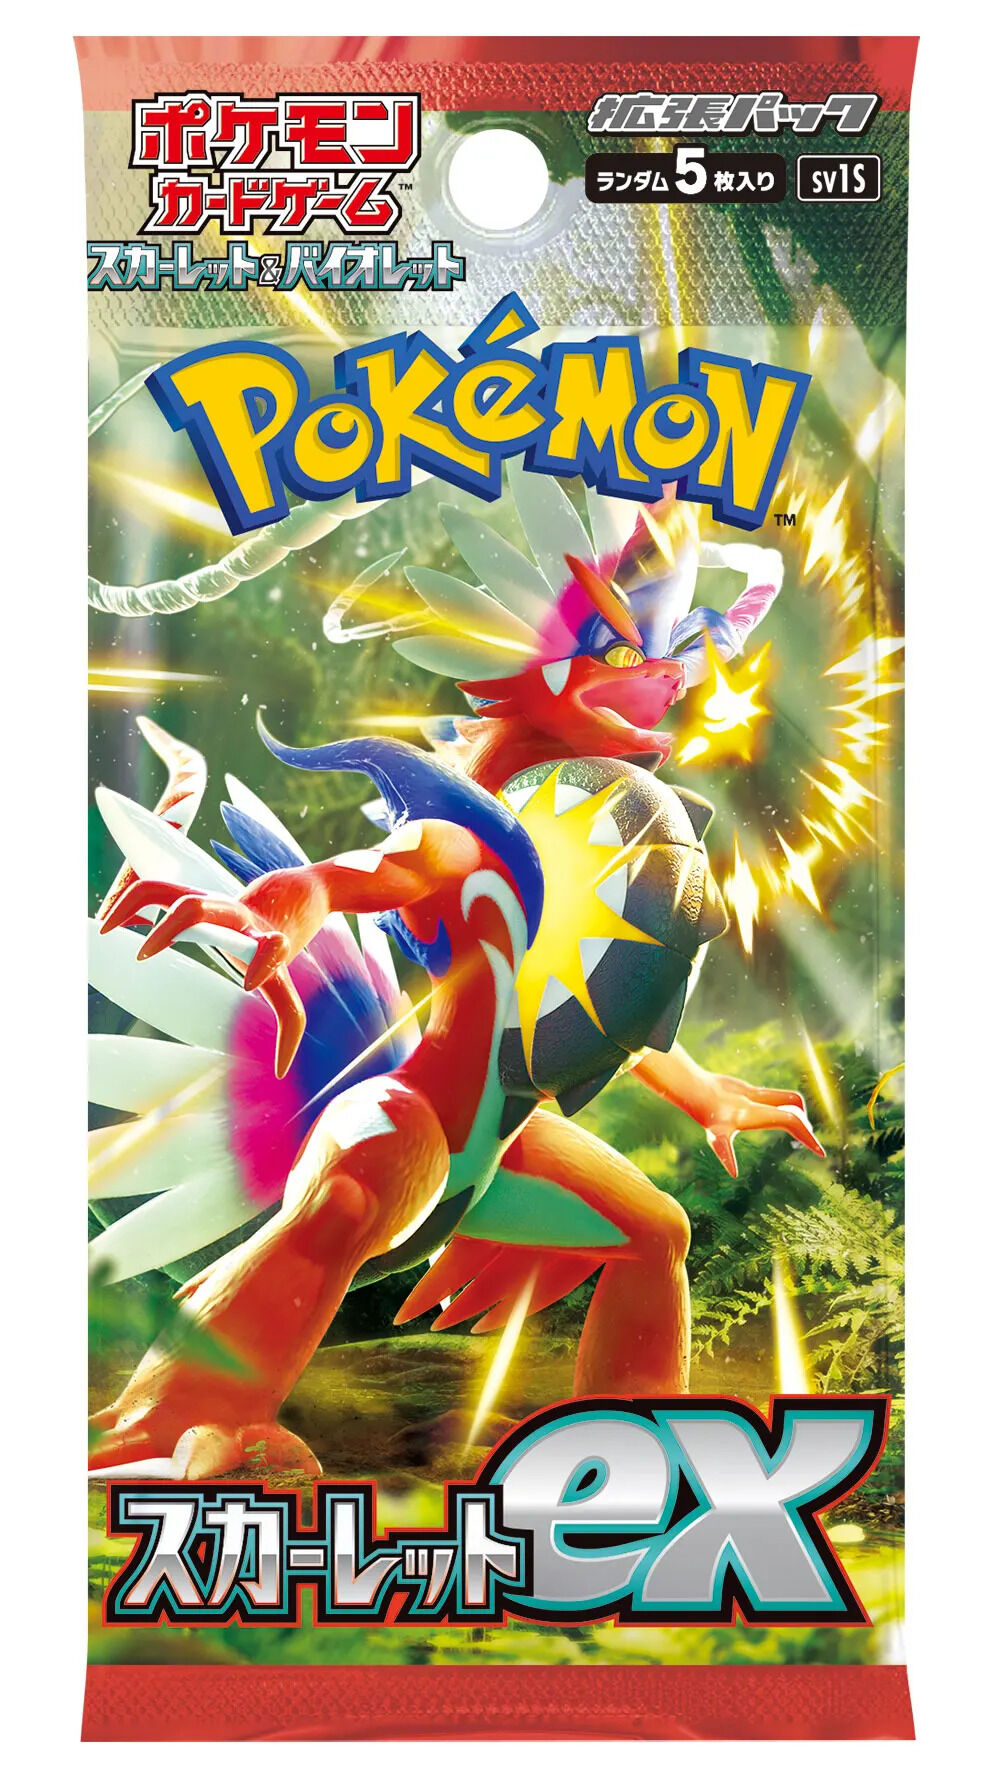 Pokémon Scarlet & Violet Expansion Pack (SV1S) Booster Display - JPN